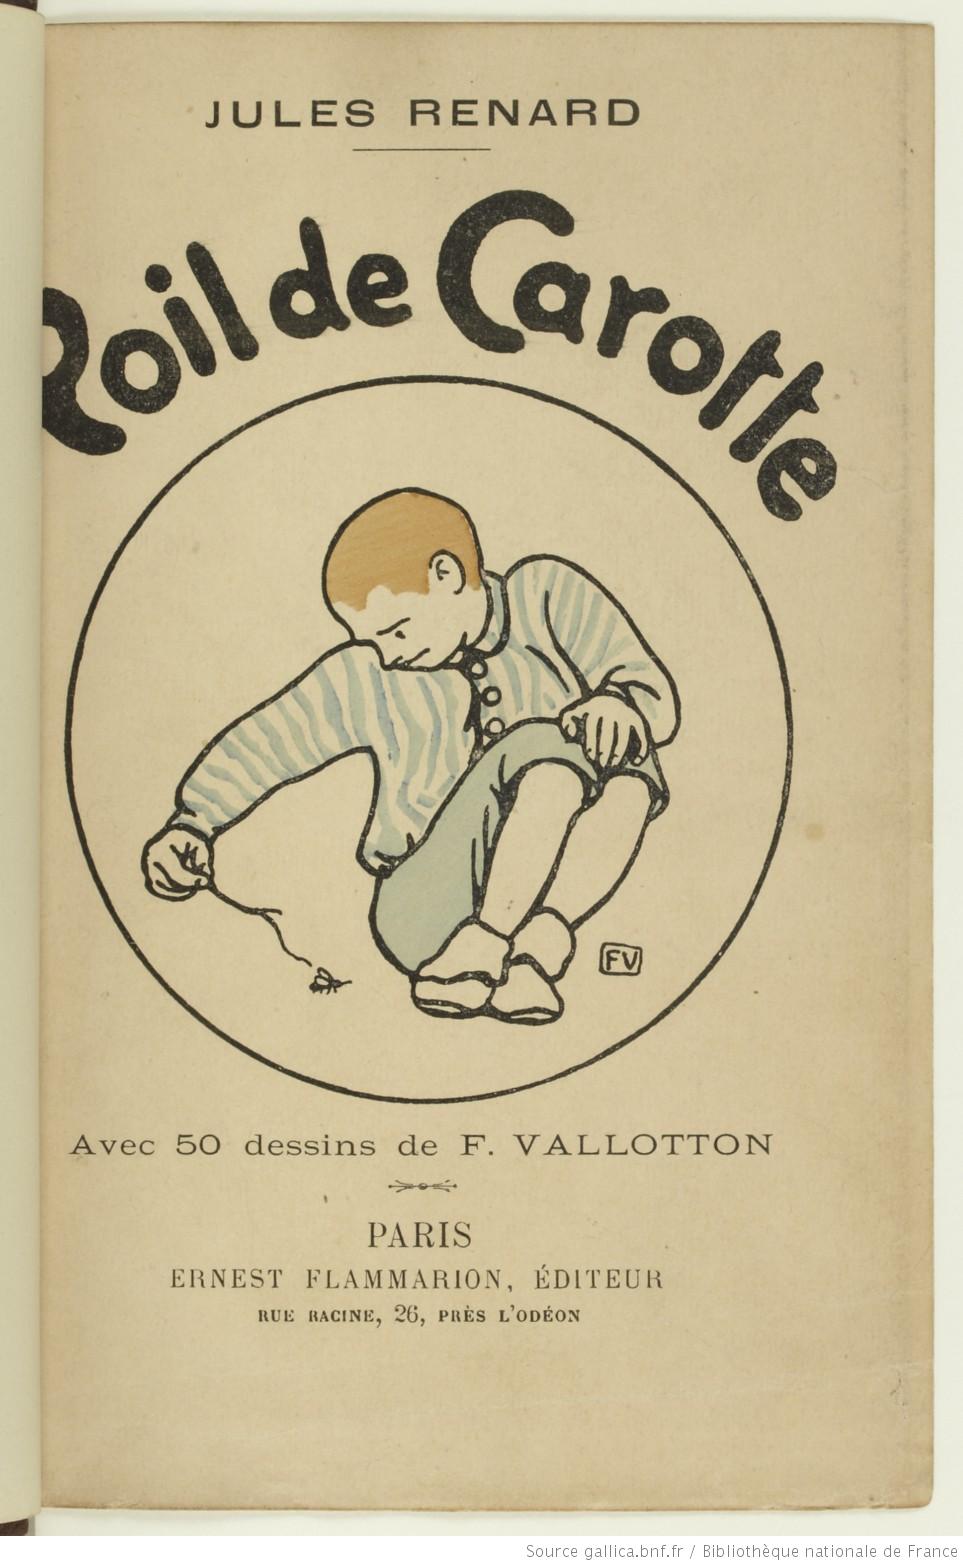 Edition illustrée par Vallotton ( 1894)